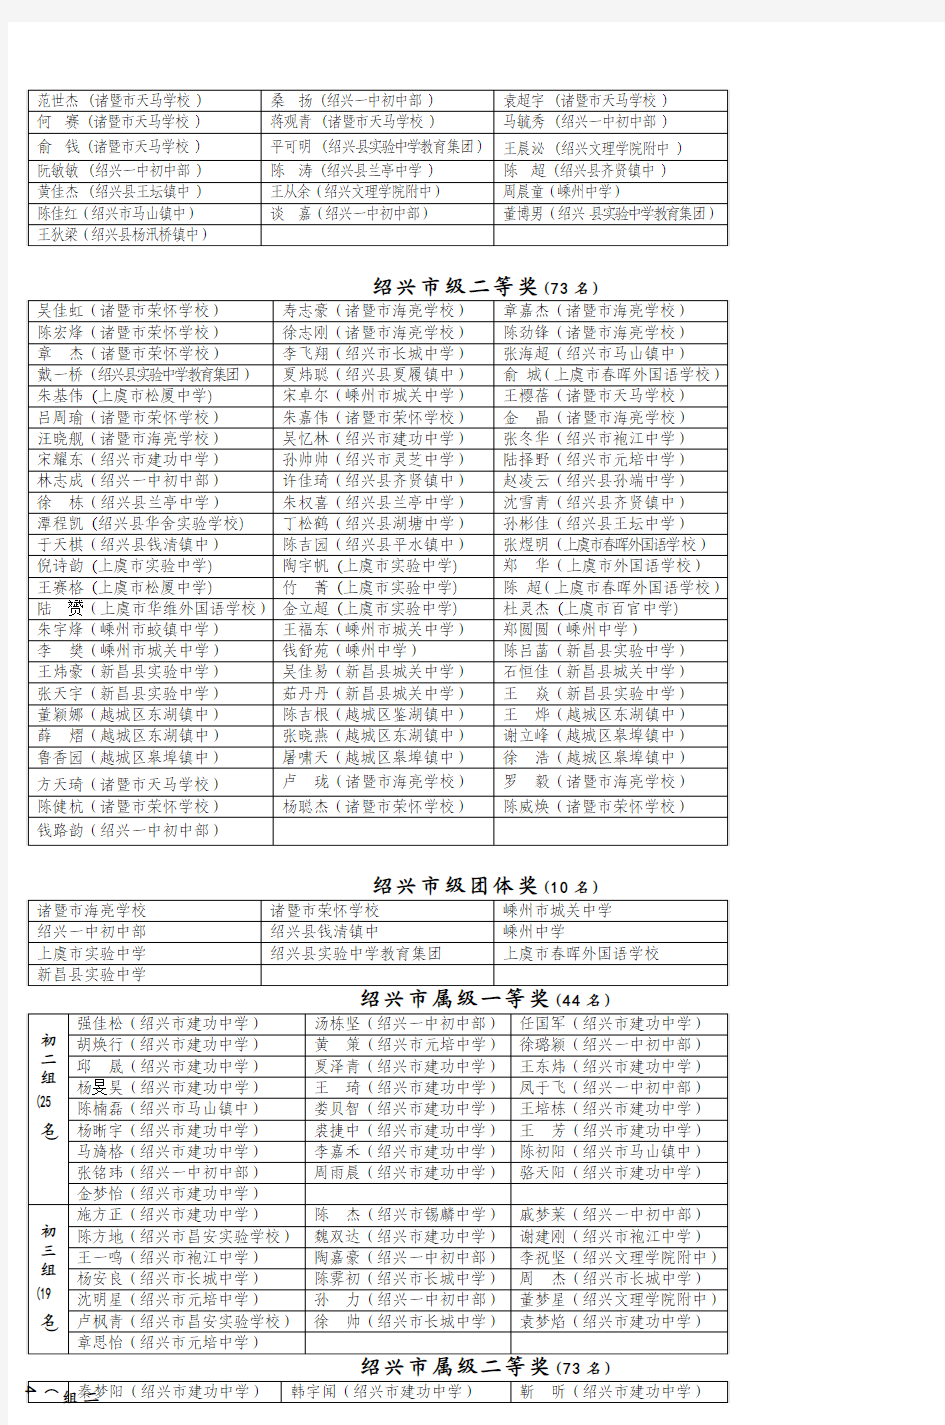 2008年全国初中数学竞赛(浙江赛区) (4)